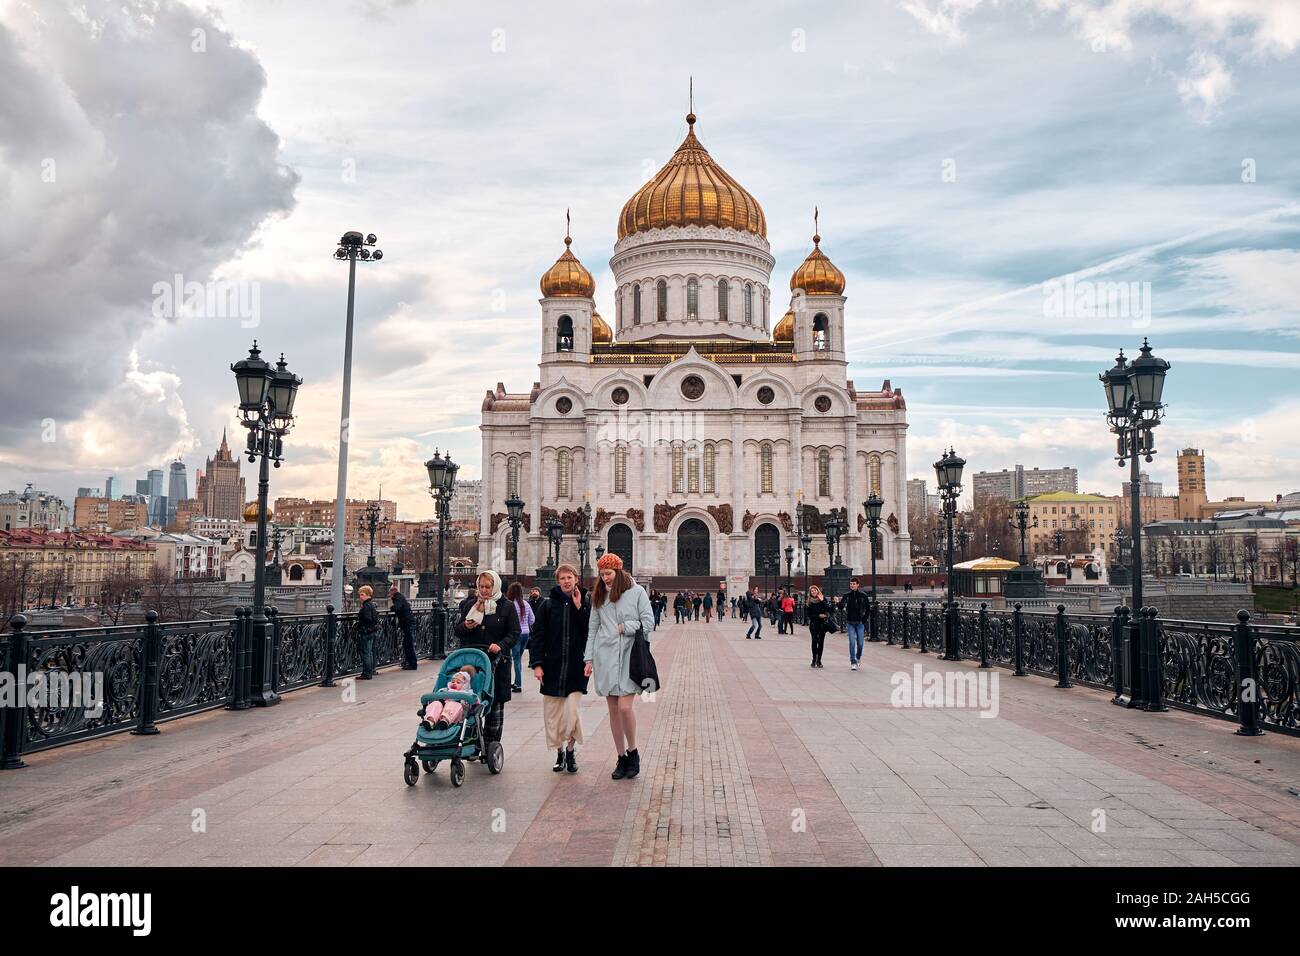 Mosca, Russia - 16 Aprile 2015: il paesaggio della Cattedrale di Cristo Salvatore dal ponte sul fiume Moskva con persone sul ponte, Mosco Foto Stock